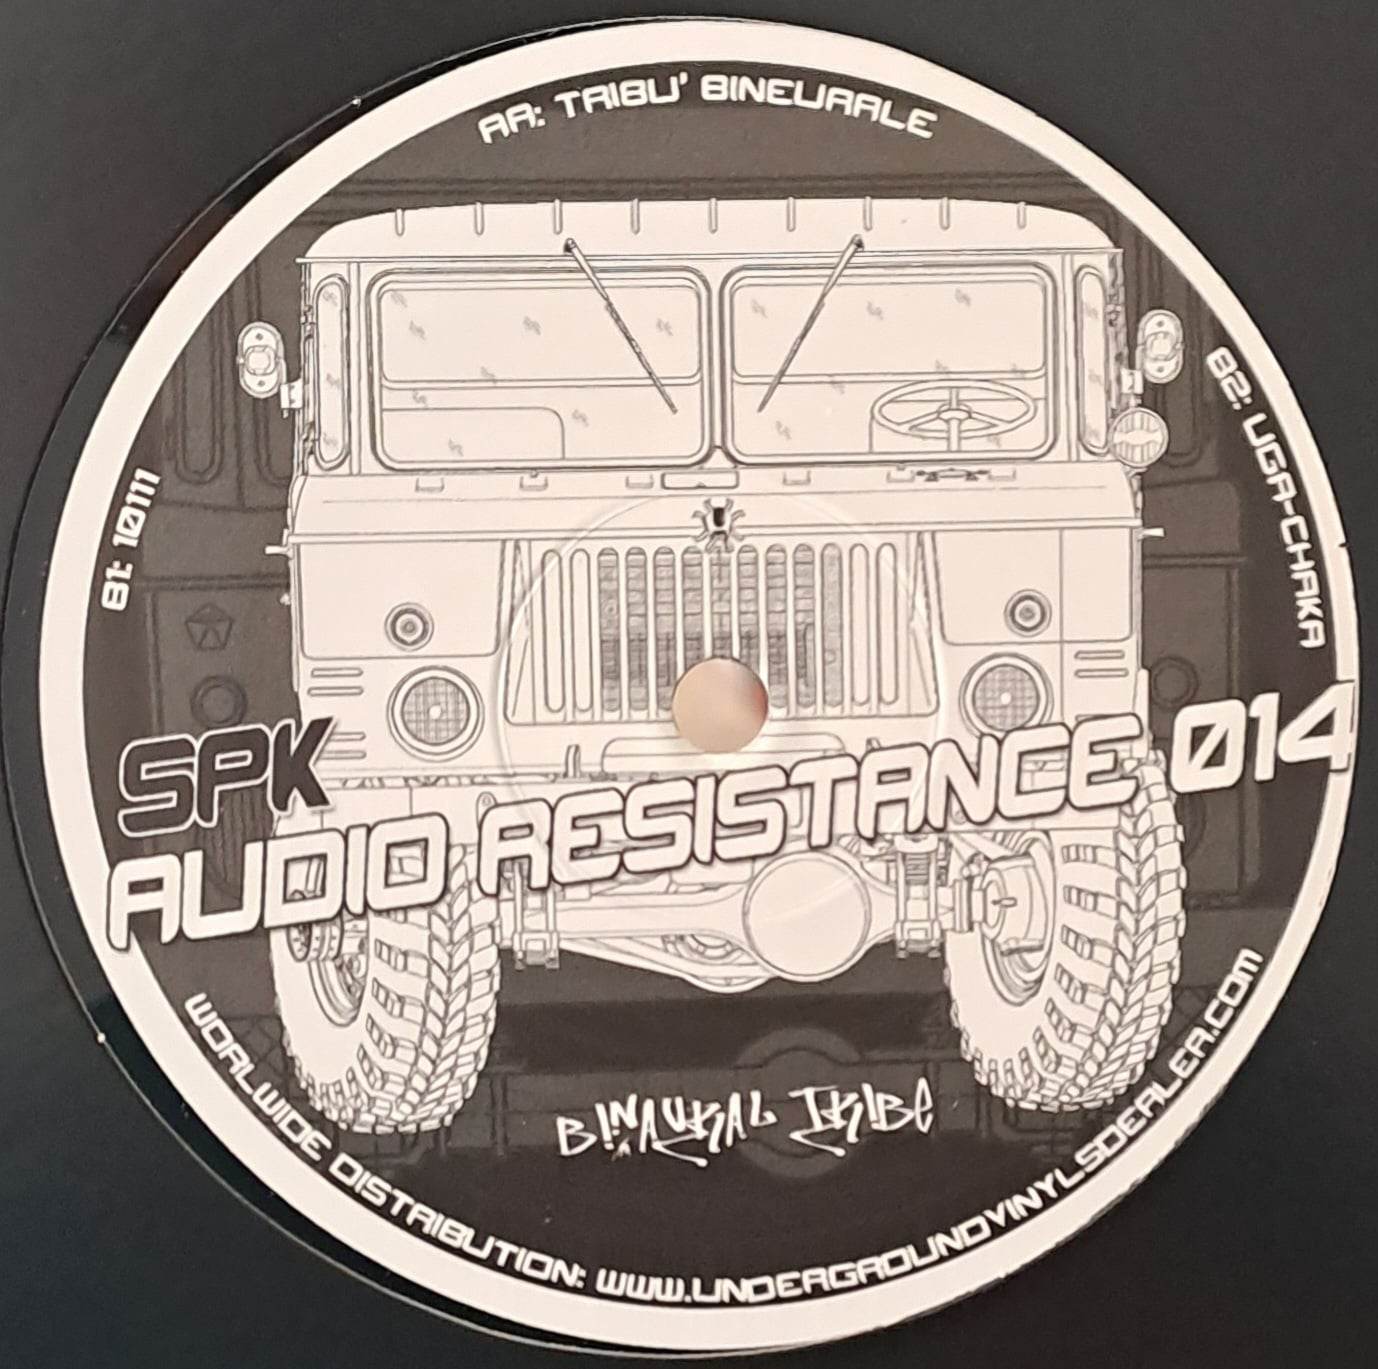 Audio Resistance 14 - vinyle freetekno